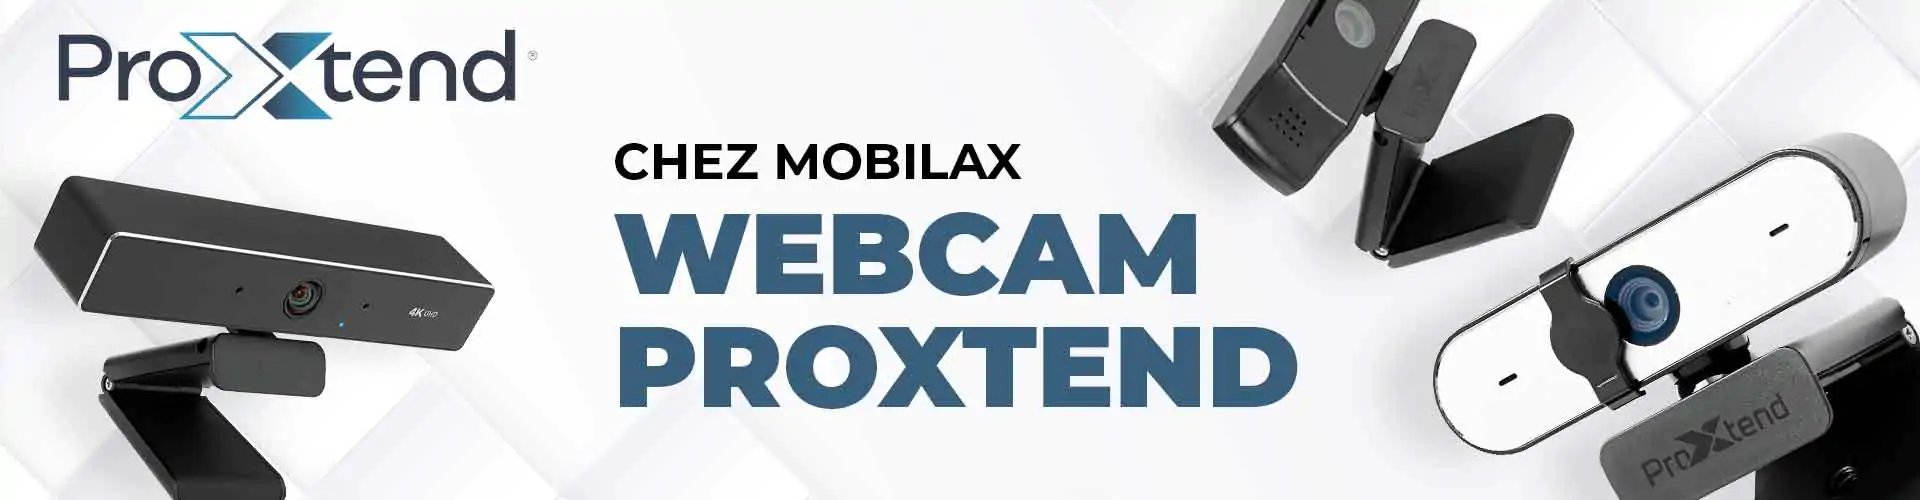 chez mobilax Webcam ProXtend